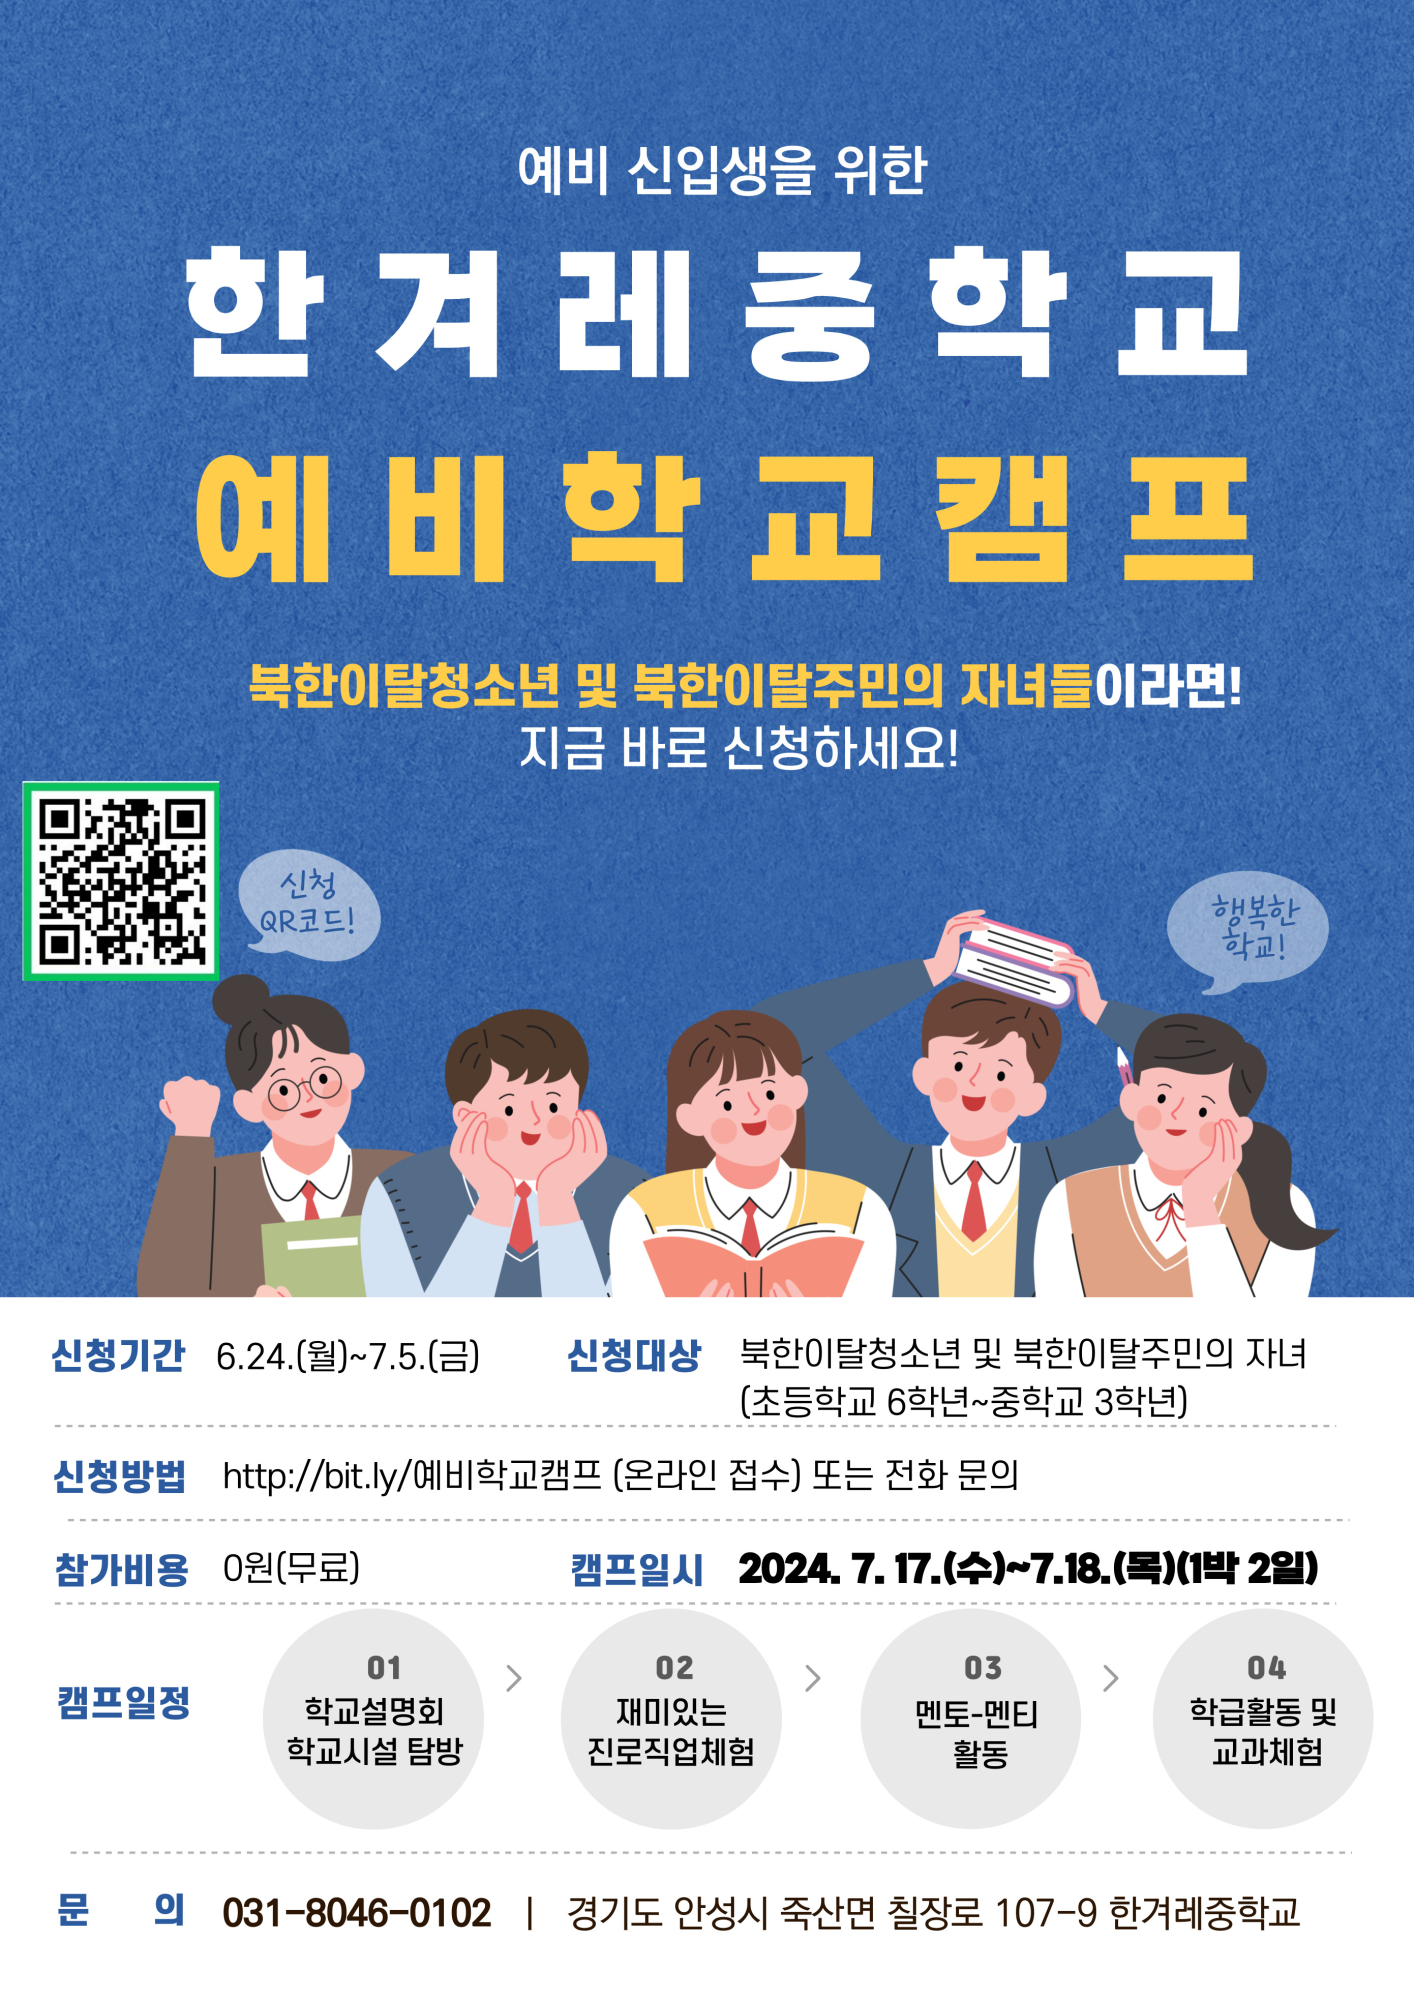 북한이탈주민의 자녀의 예비 신입생을 위한 한겨레중학교 예비학교캠프 홍보